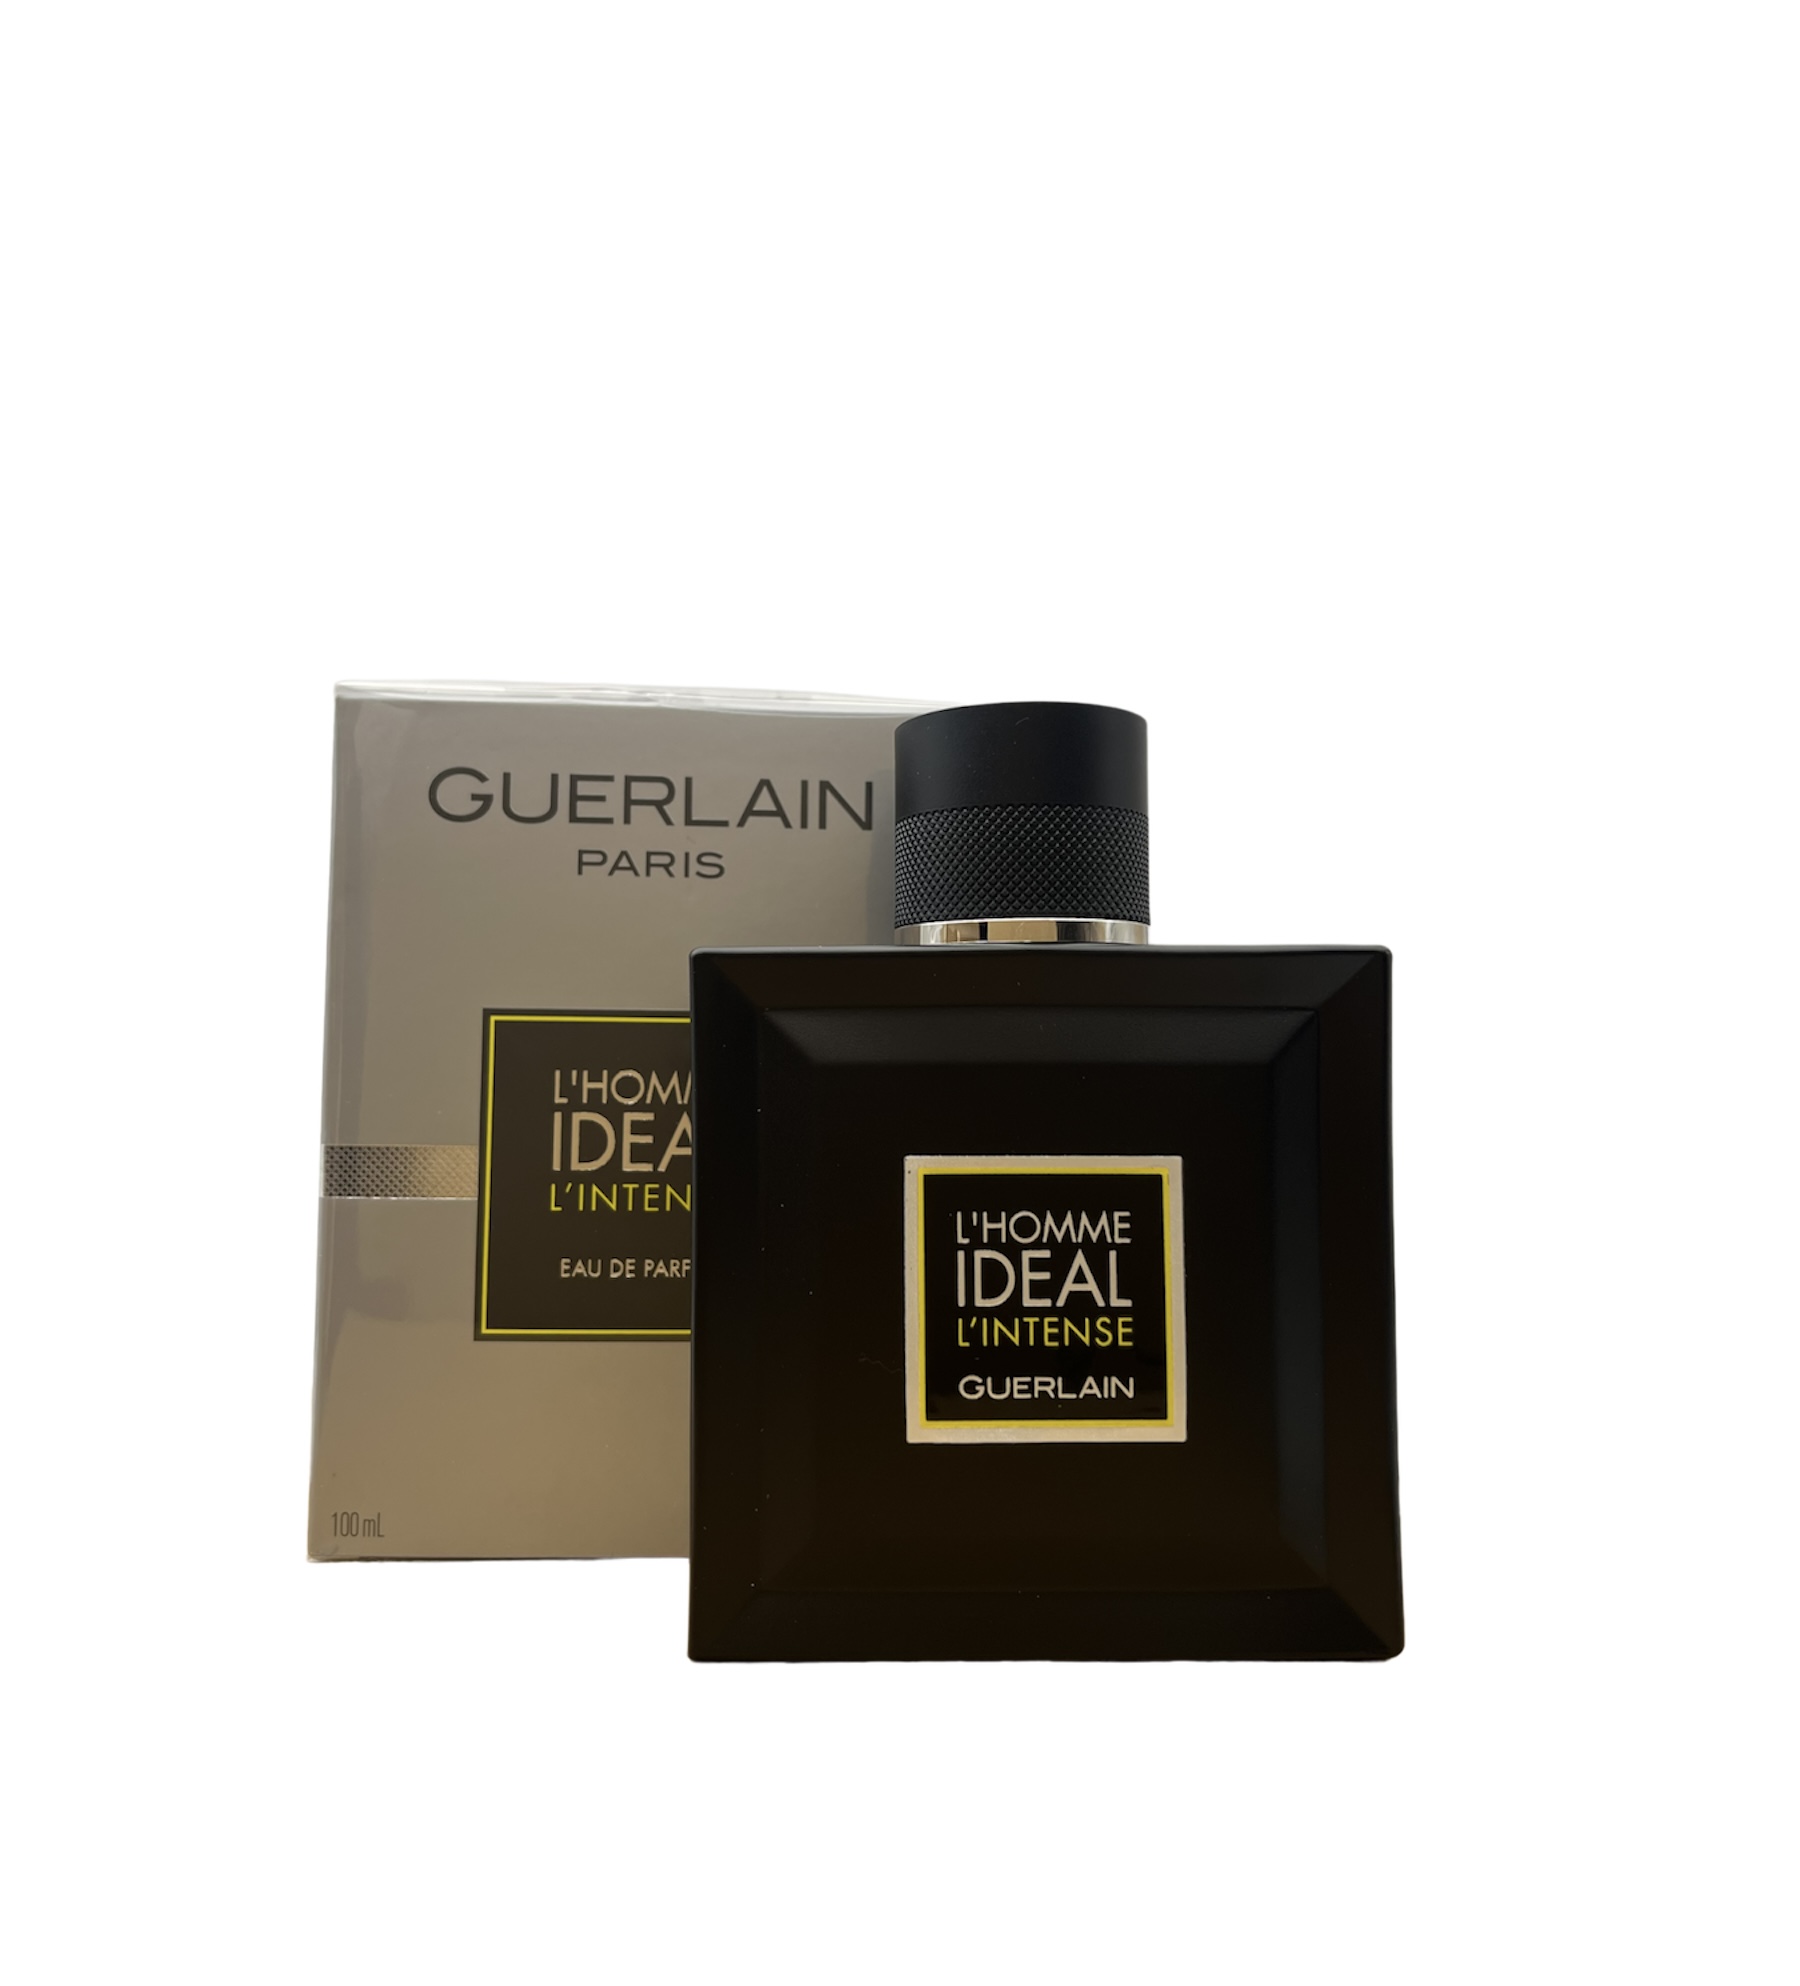  Guerlain L'Homme Idéal L'Intense Eau de Parfum 100ml 